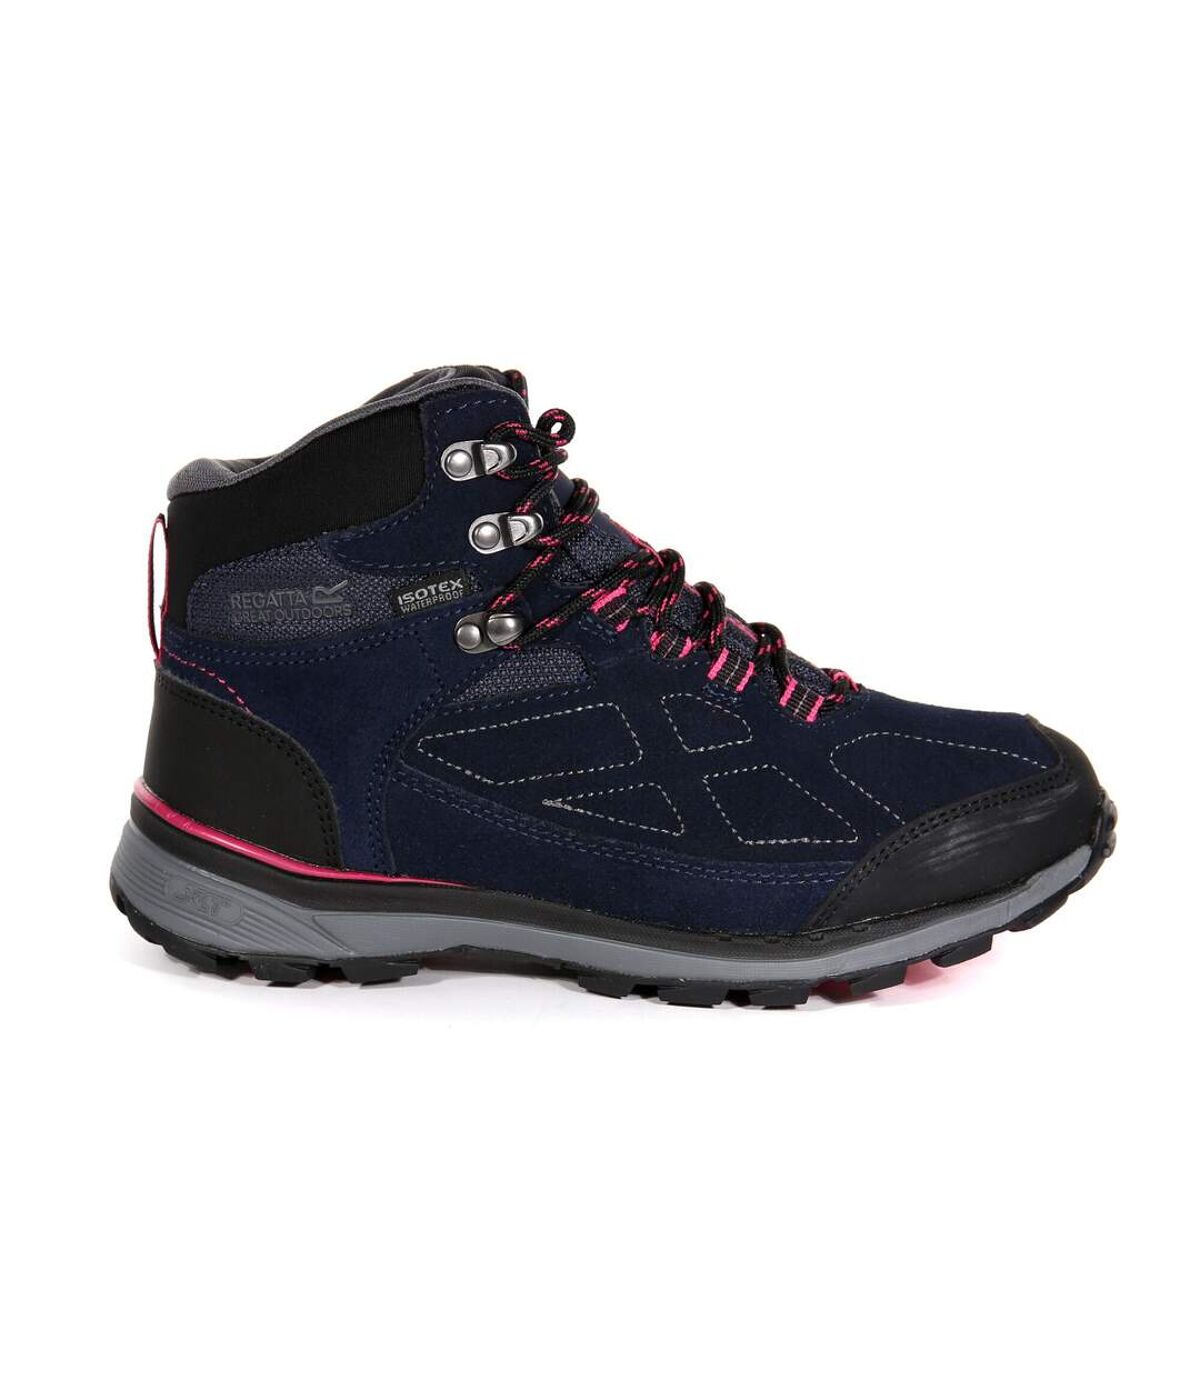 Regatta Womens/Ladies Samaris Suede Walking Boots (Navy/Duchess Pink) - UTRG3768